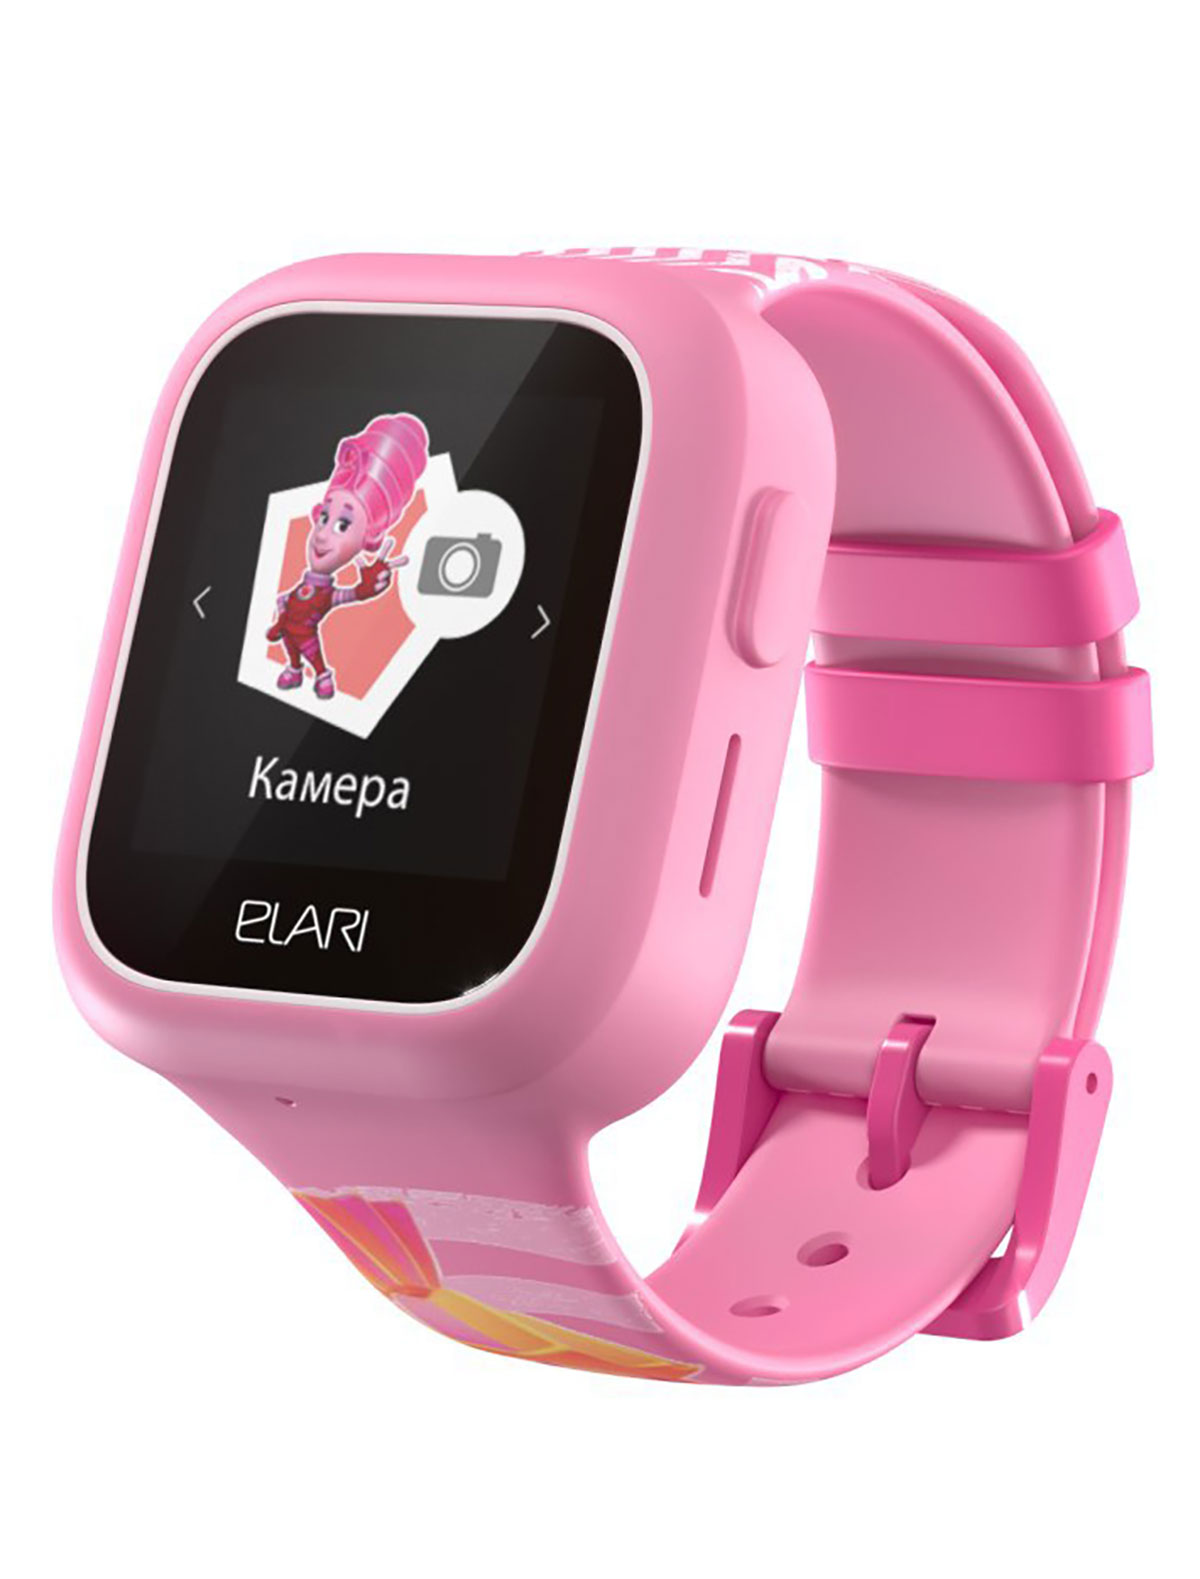 Часы ELARI детские смарт часы aimoto iq 4g 1 44 gps видеозвонок голосовой помощник маруся розовые